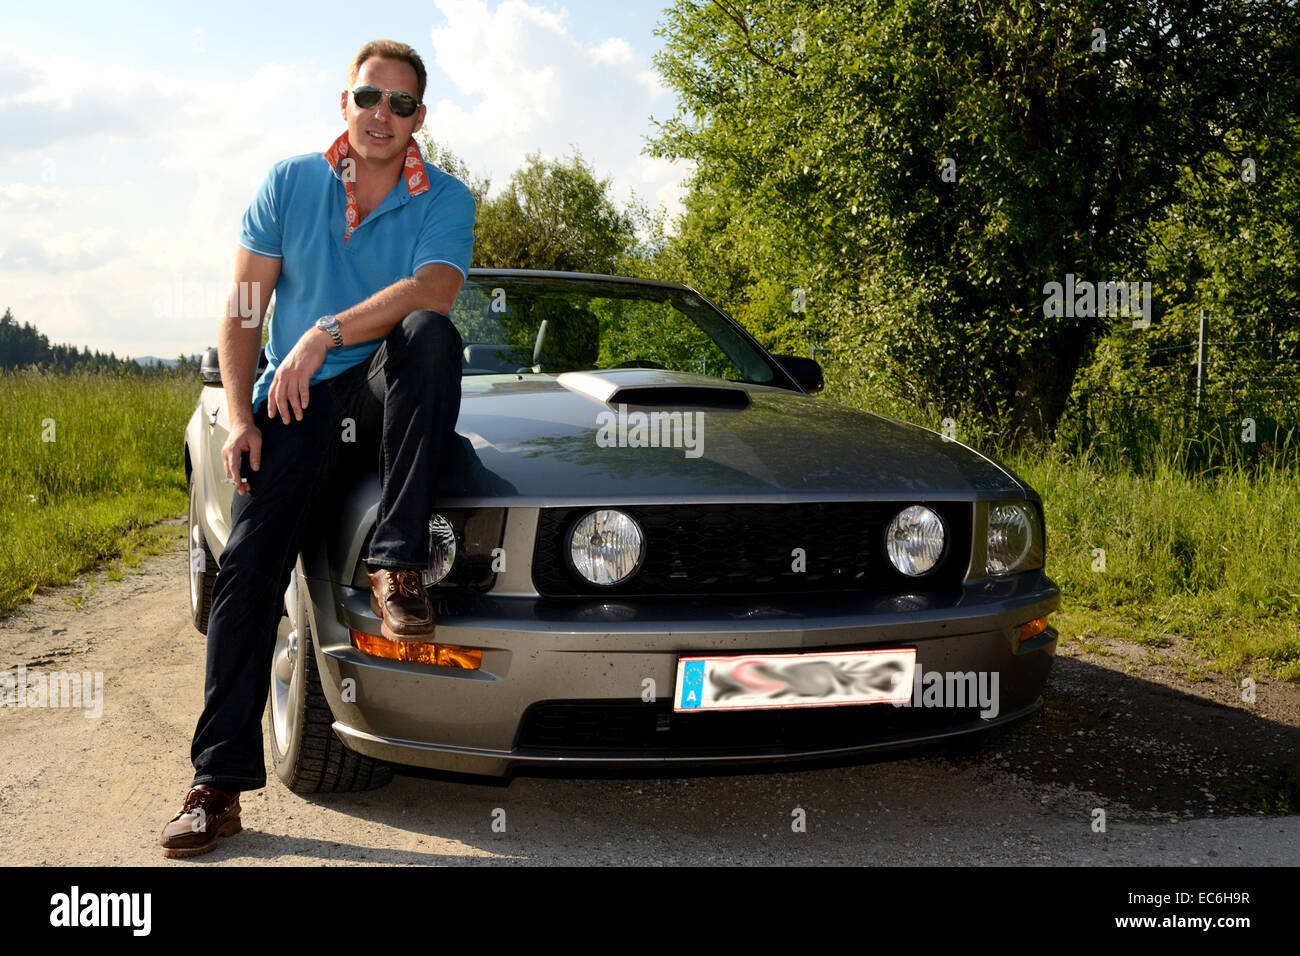 Coole Sportwagen Besitzer Sitzt An Seinem Auto Stockfotografie Alamy